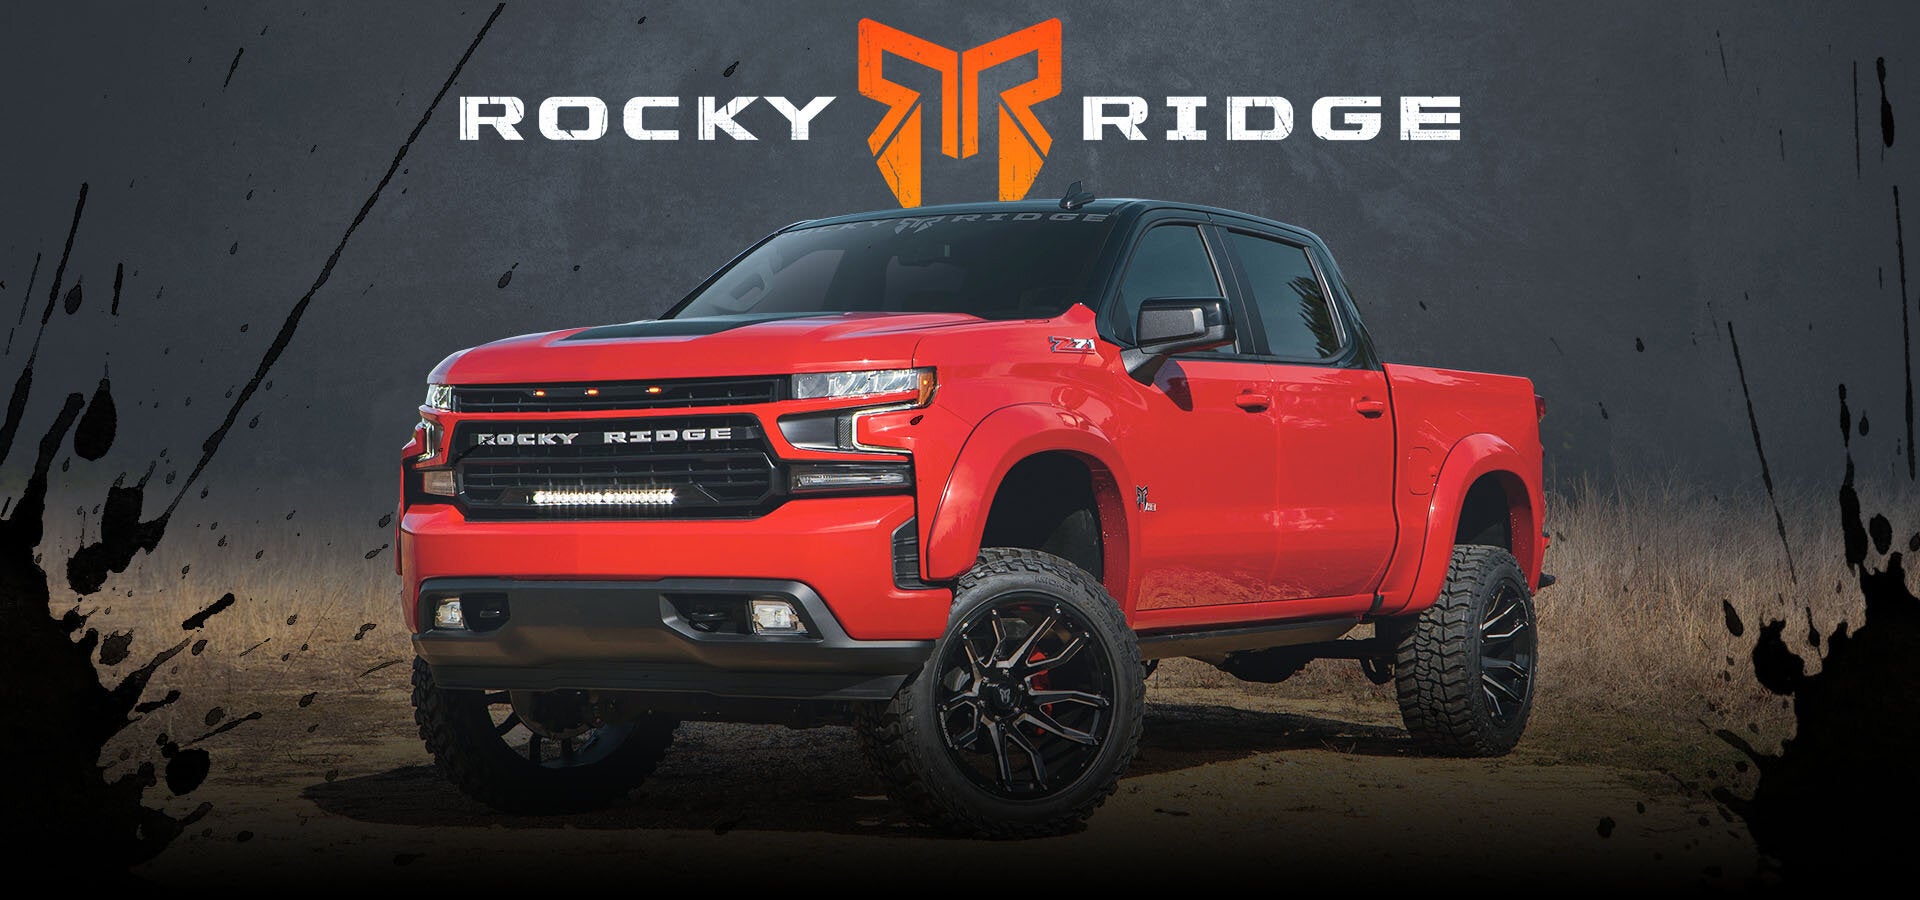 Rocky Ridge Trucks | Mankato Chevrolet in Mankato MN